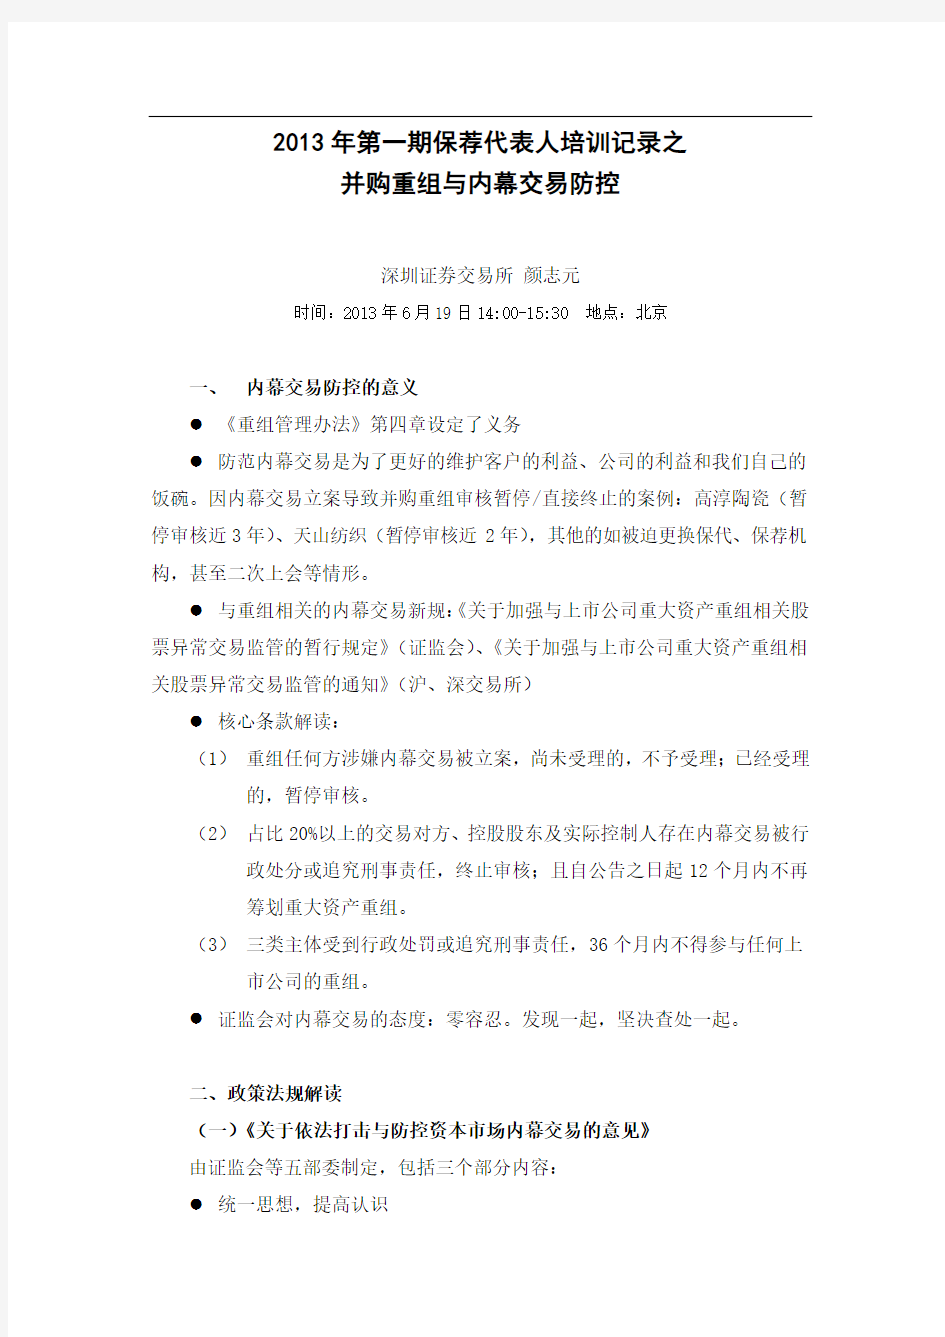 XX第一期保荐代表人培训记录之并购重组与内幕交易防控-深圳证券交易所颜志元